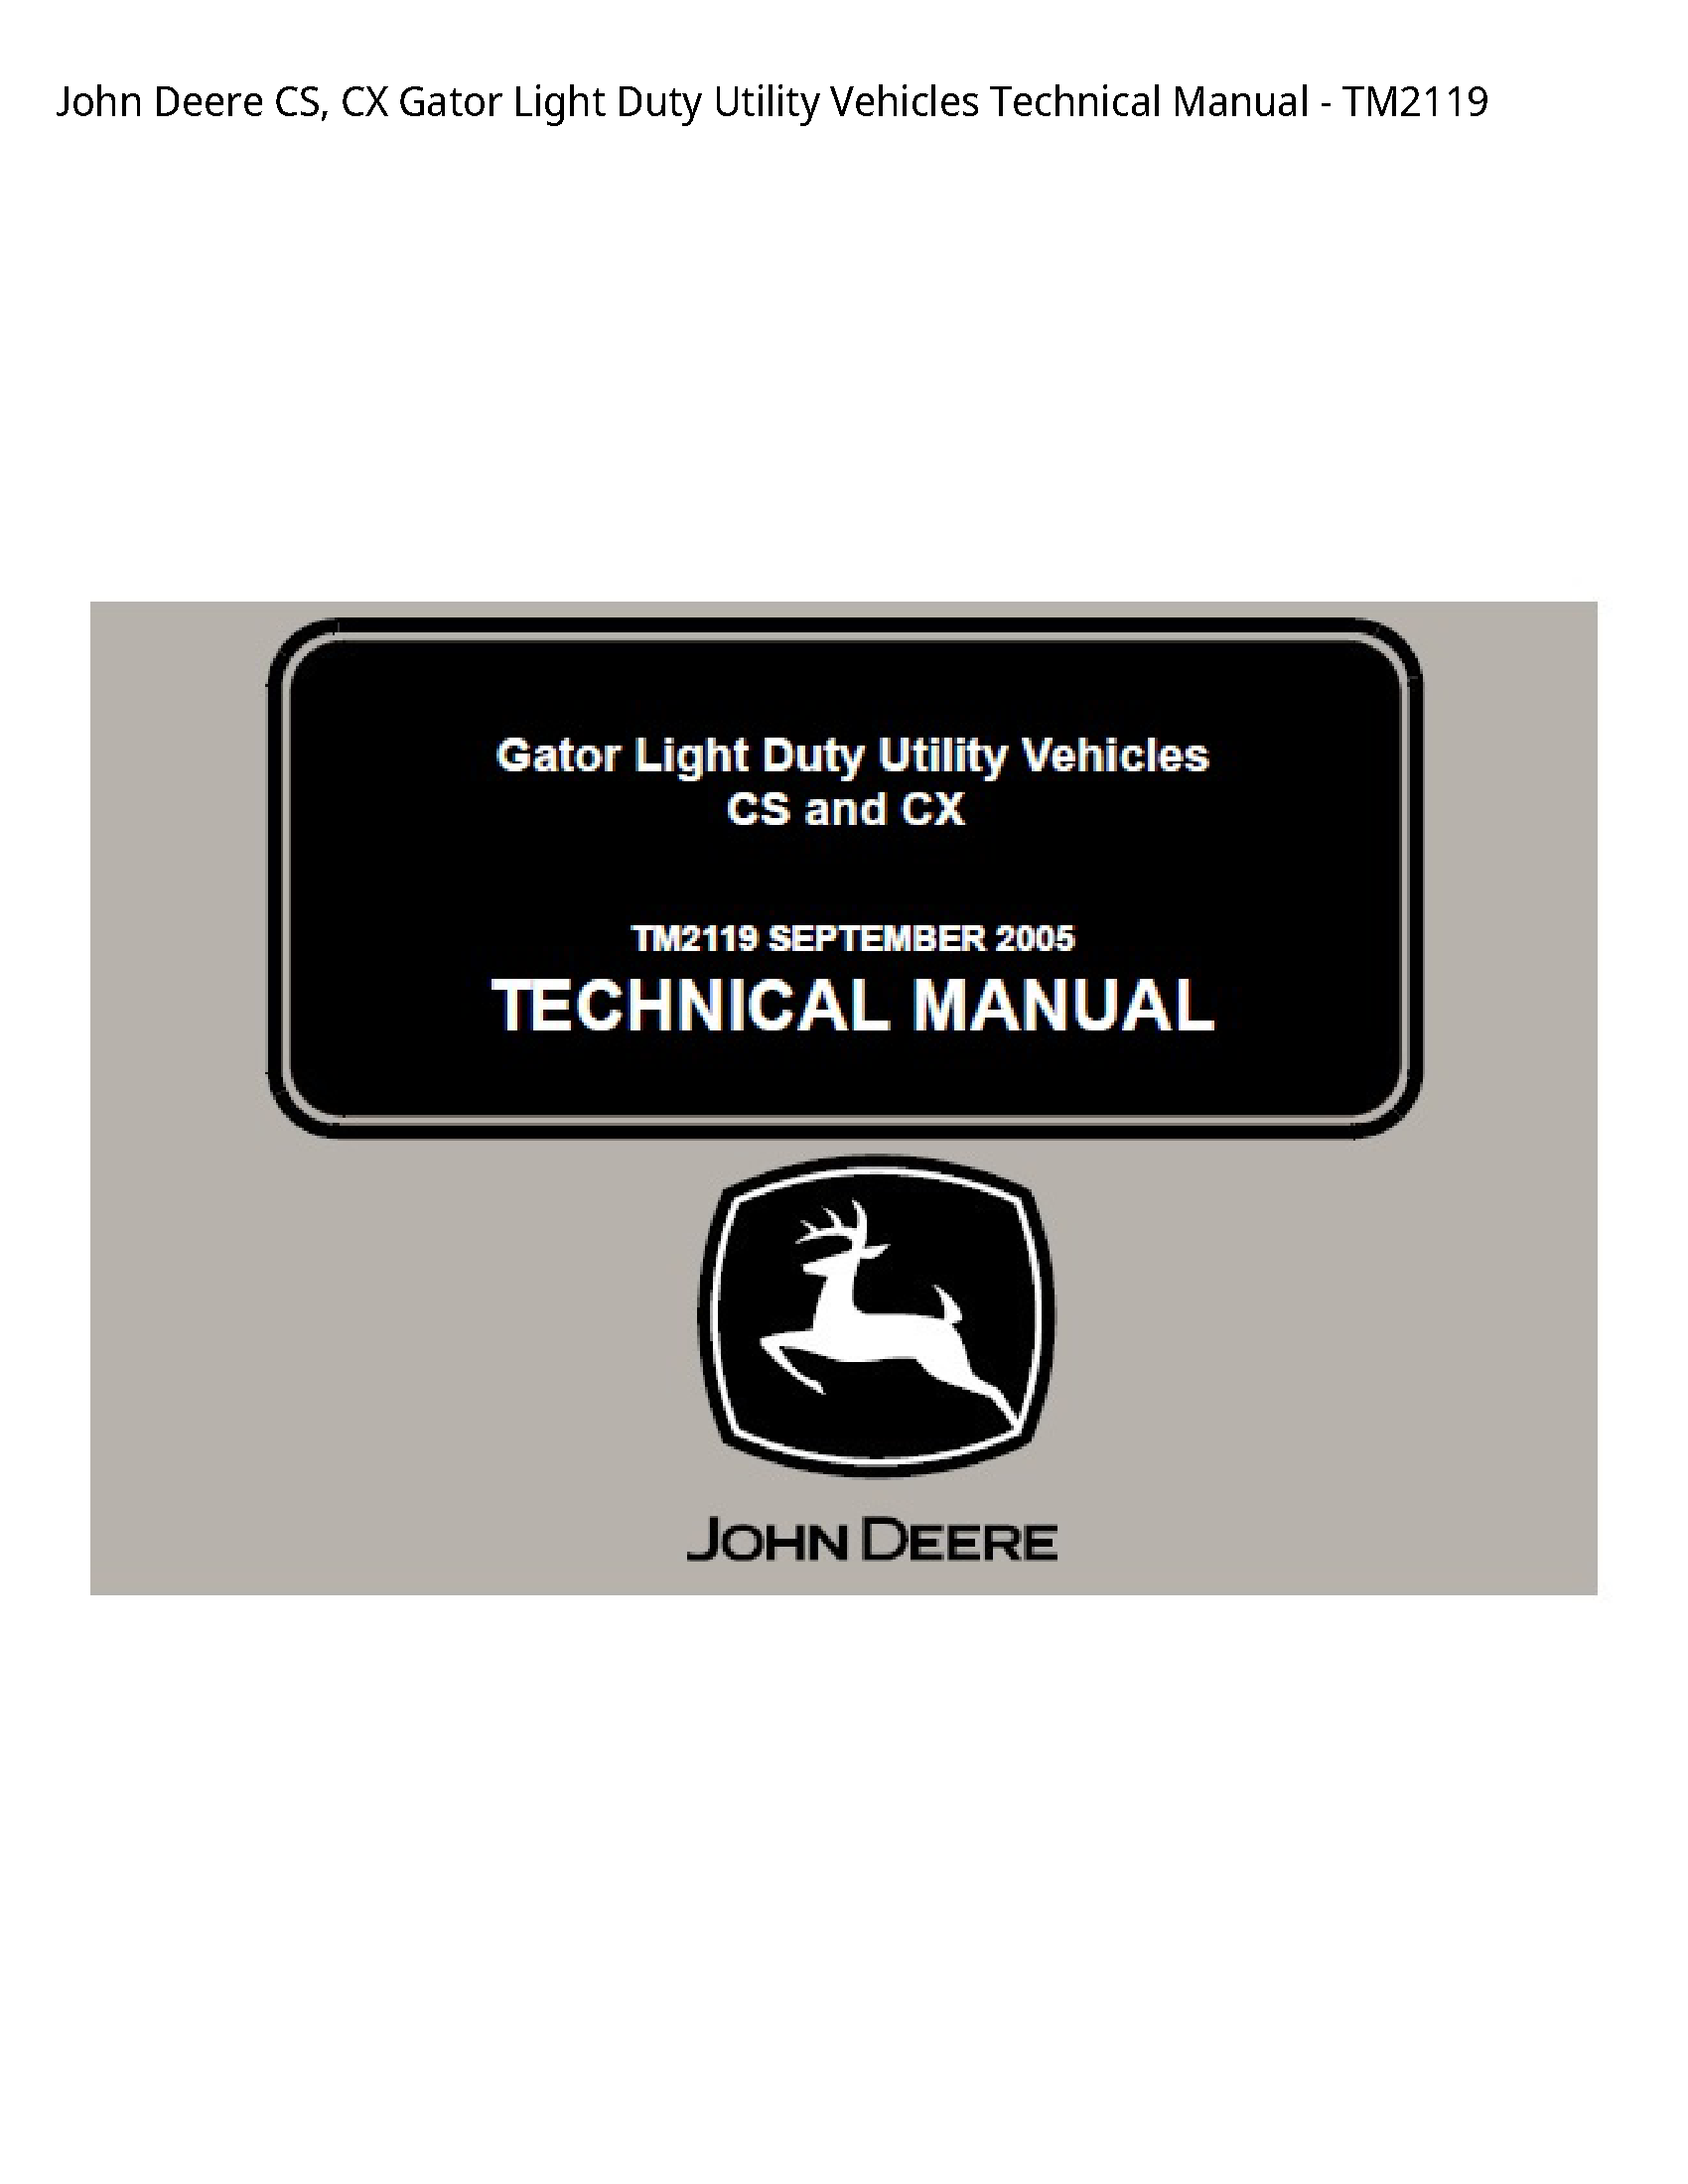 John Deere CS manual